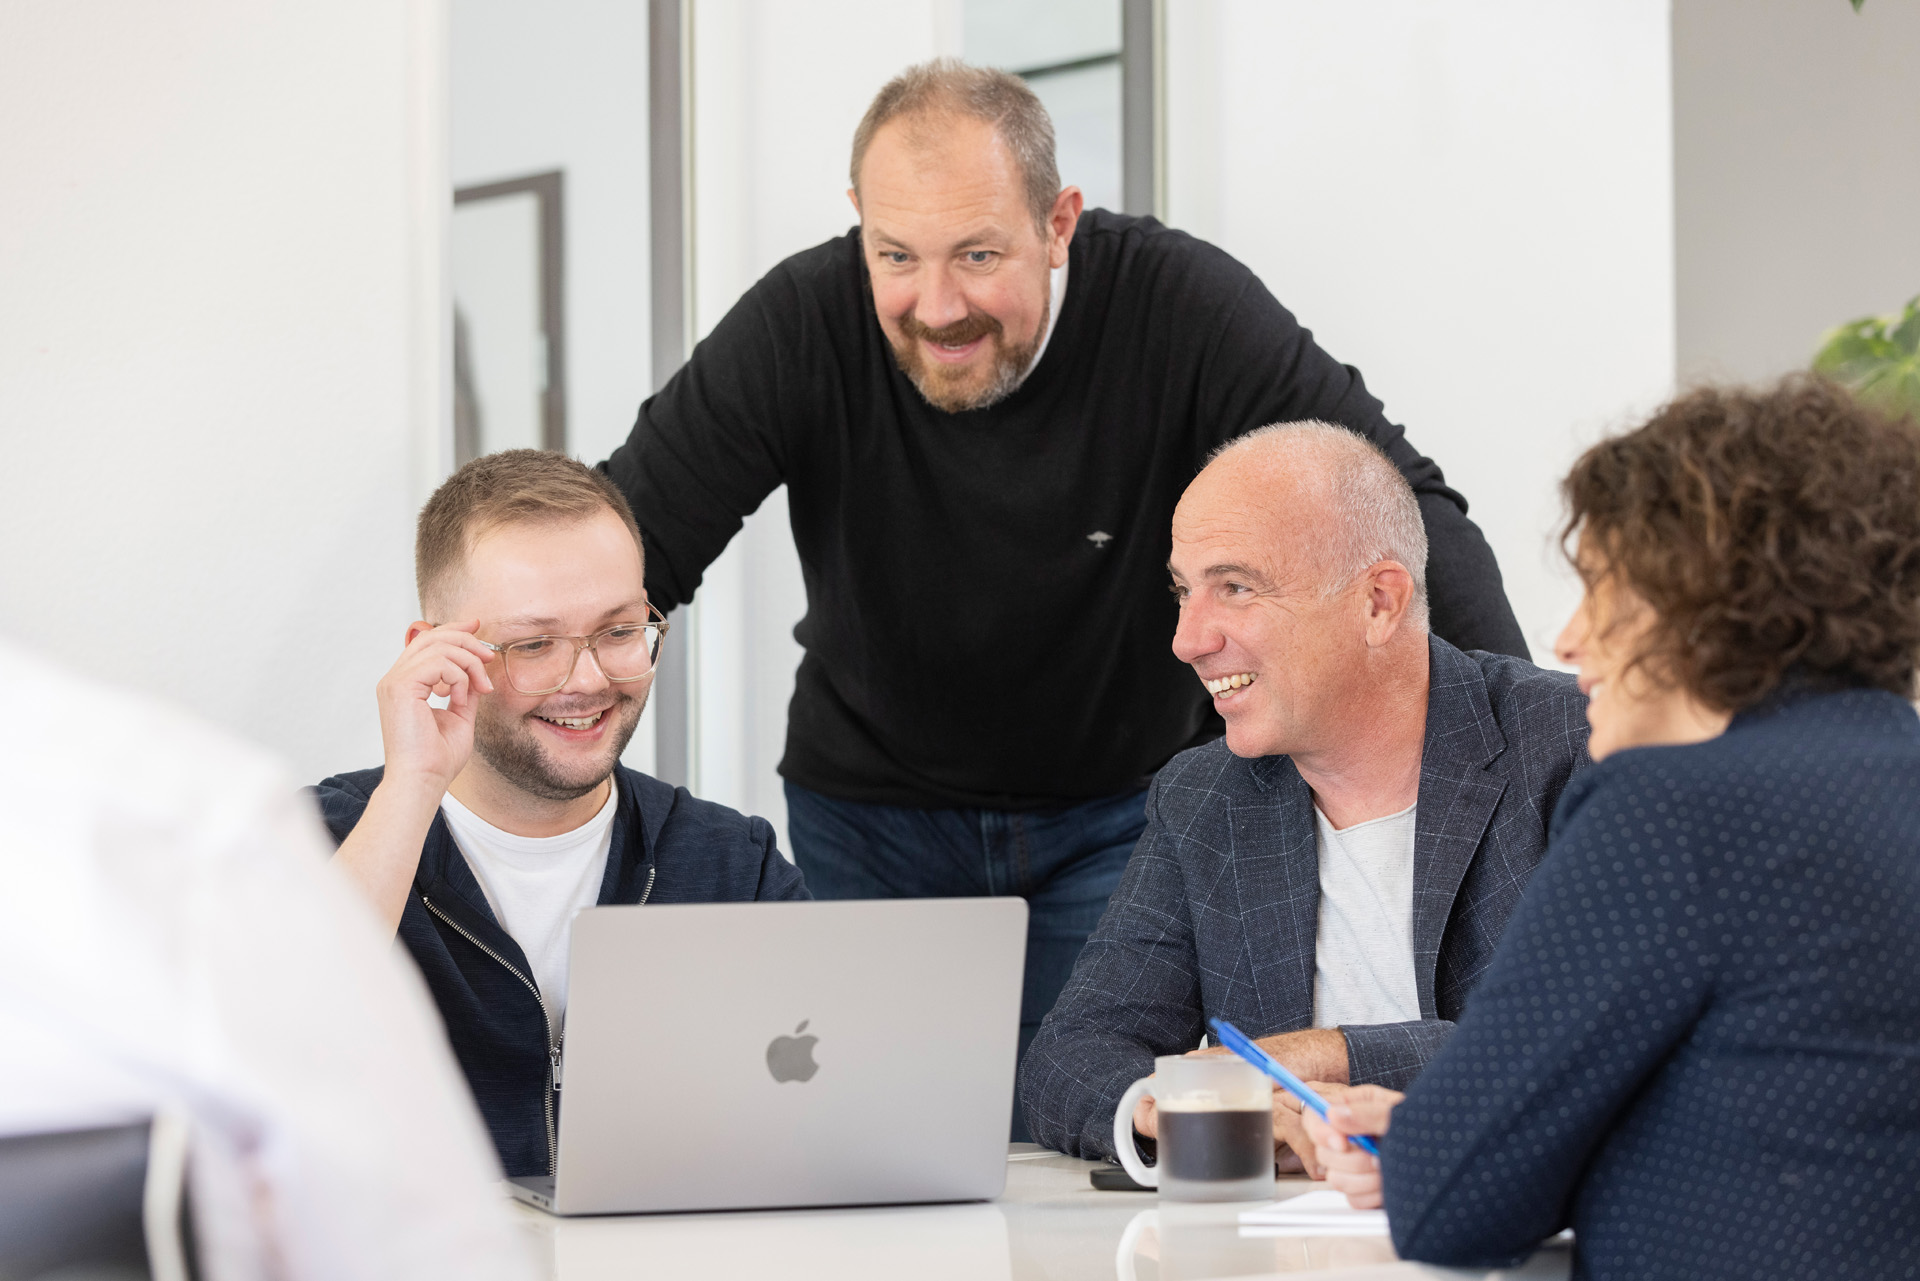 Das arcworx Team im Meeting an einem Laptop